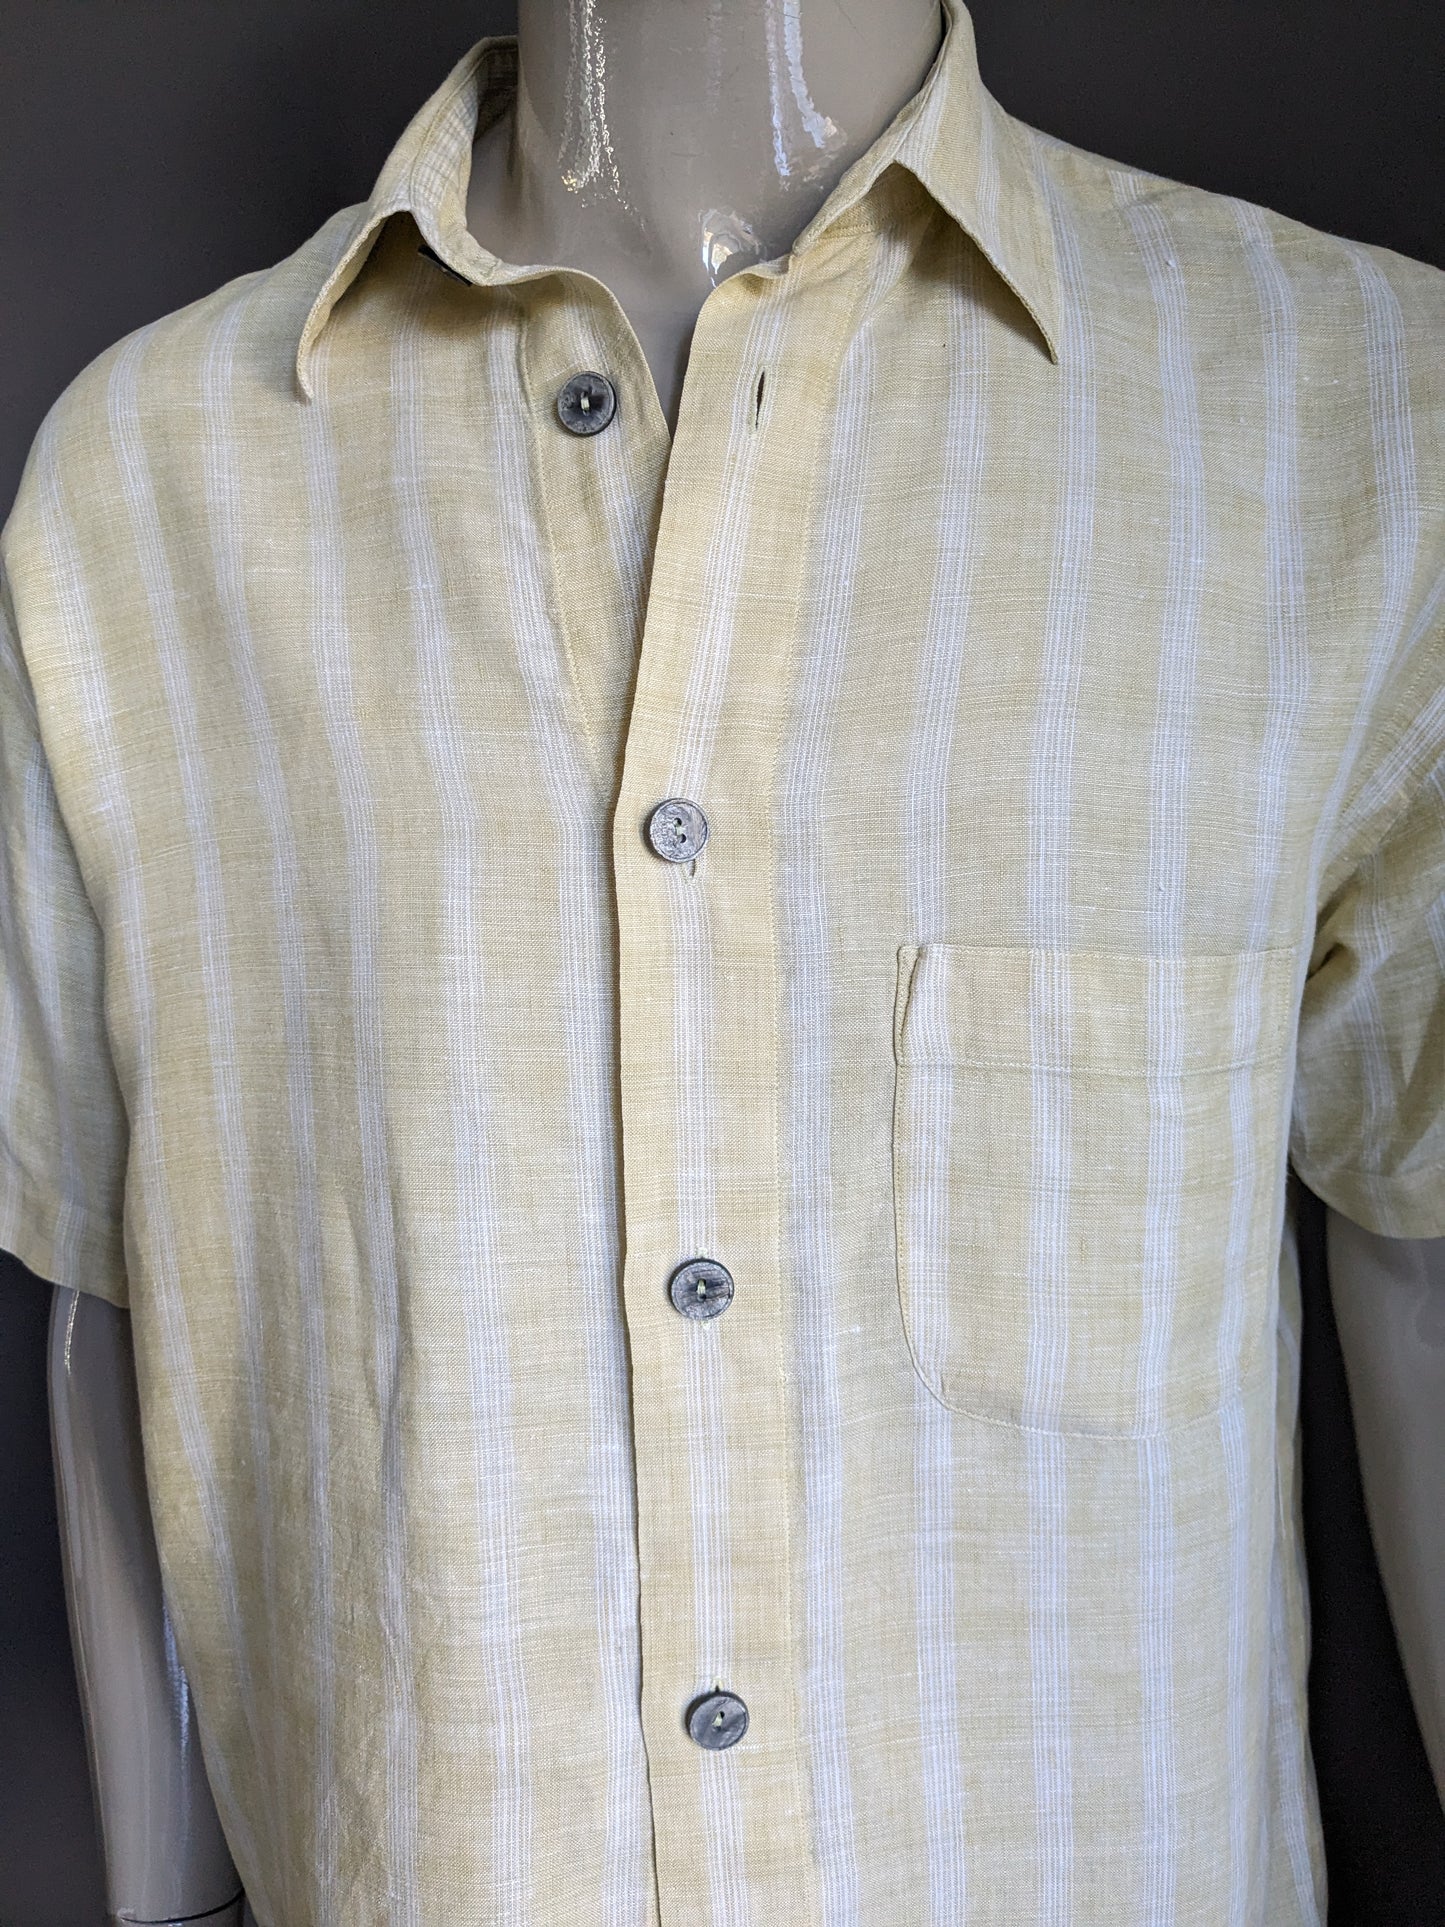 Camicia corta vintage in lino. Pulsanti più grandi. A scacchi giallo bianco. Taglia L / XL.